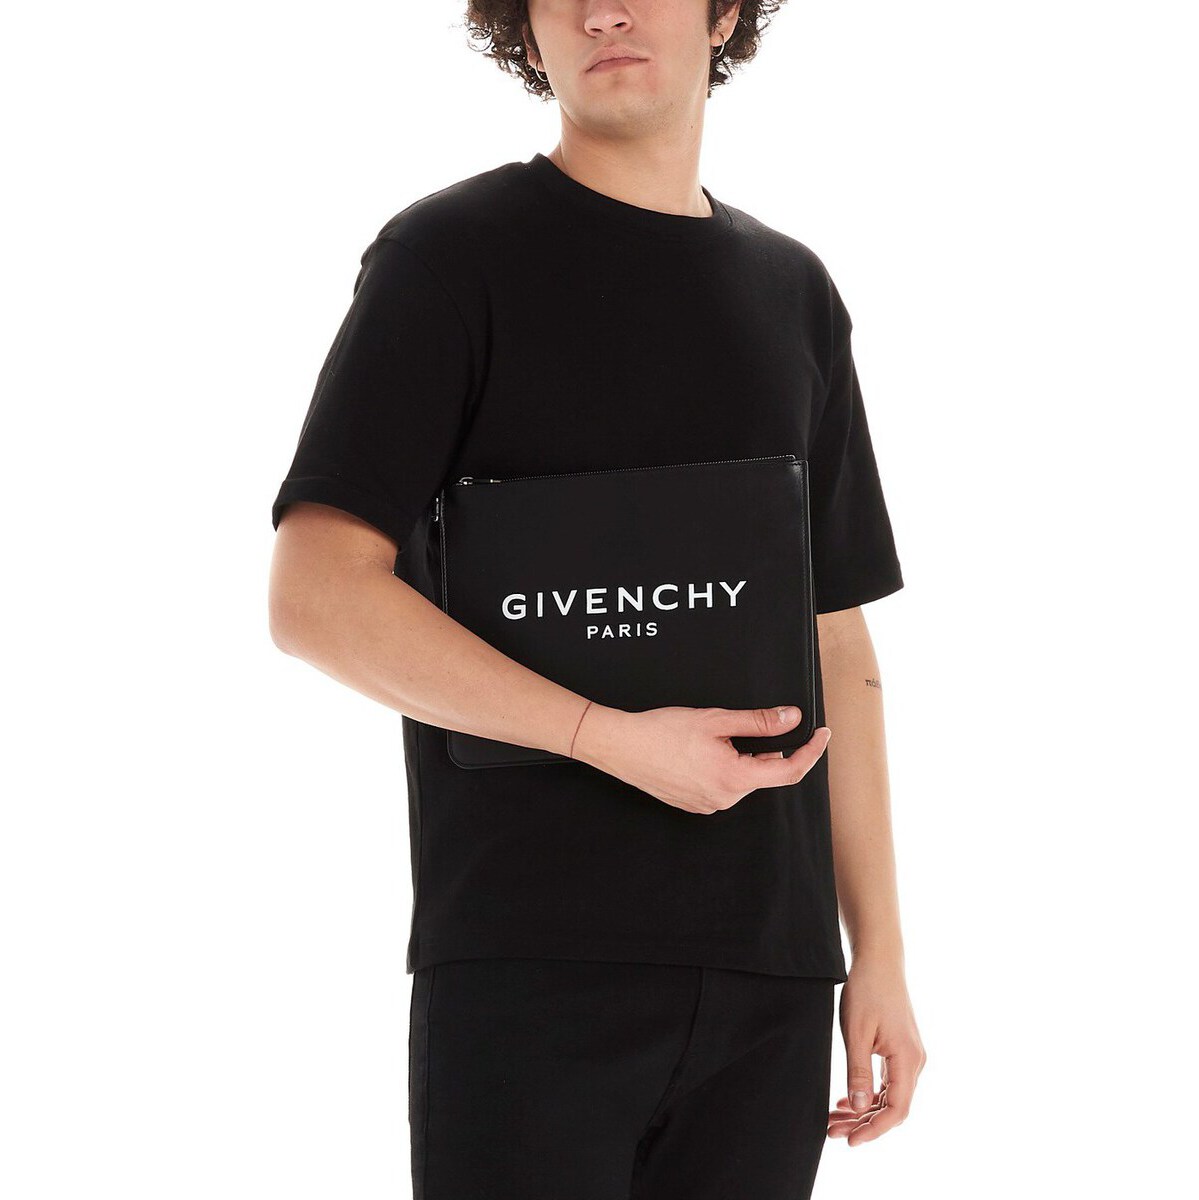 大流行中 Givenchy ジバンシィ Black Givenchy Paris Clutch メンズ 秋冬 Bk600jk0ac001 Ju 50 Off Www Automagg Com